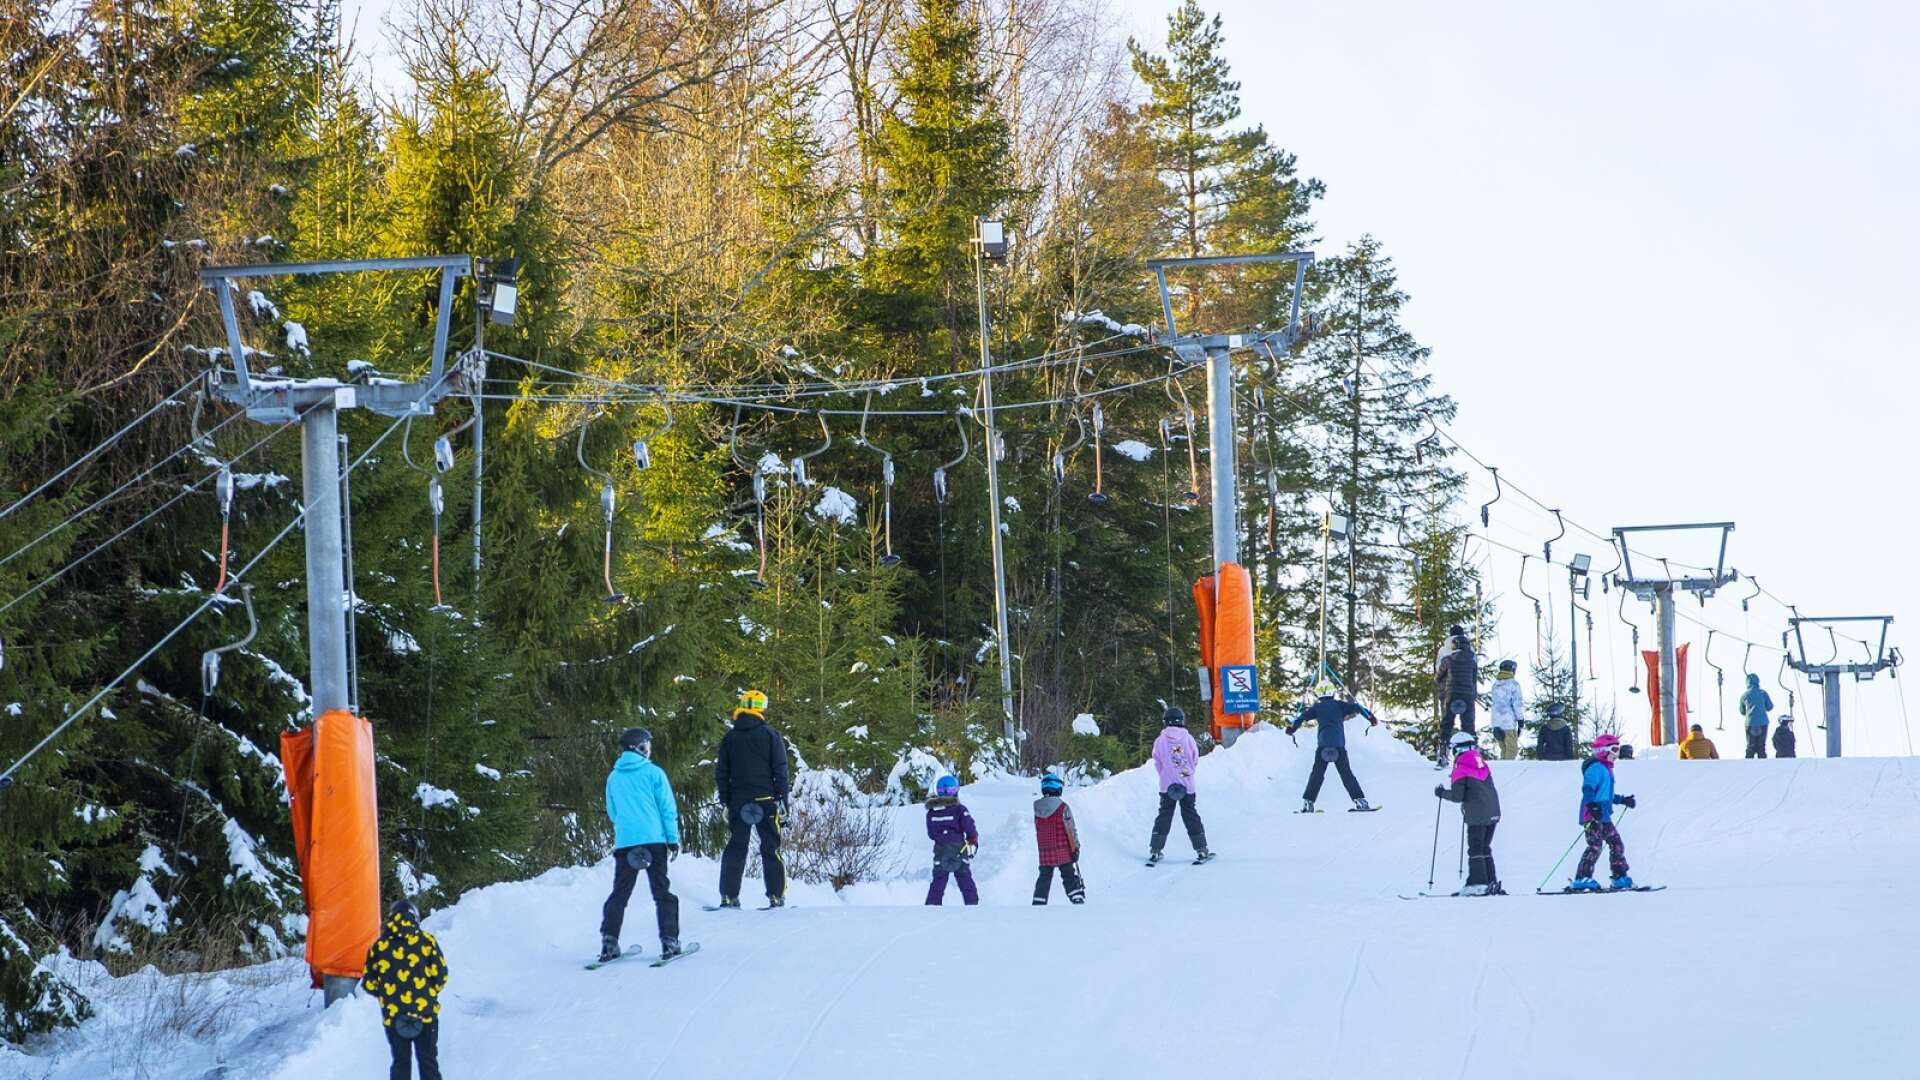 Våra kommuner behöver ta ett större ansvar för att främja skidåkning och tillgången till skidanläggningar, skriver Jan Sandström.